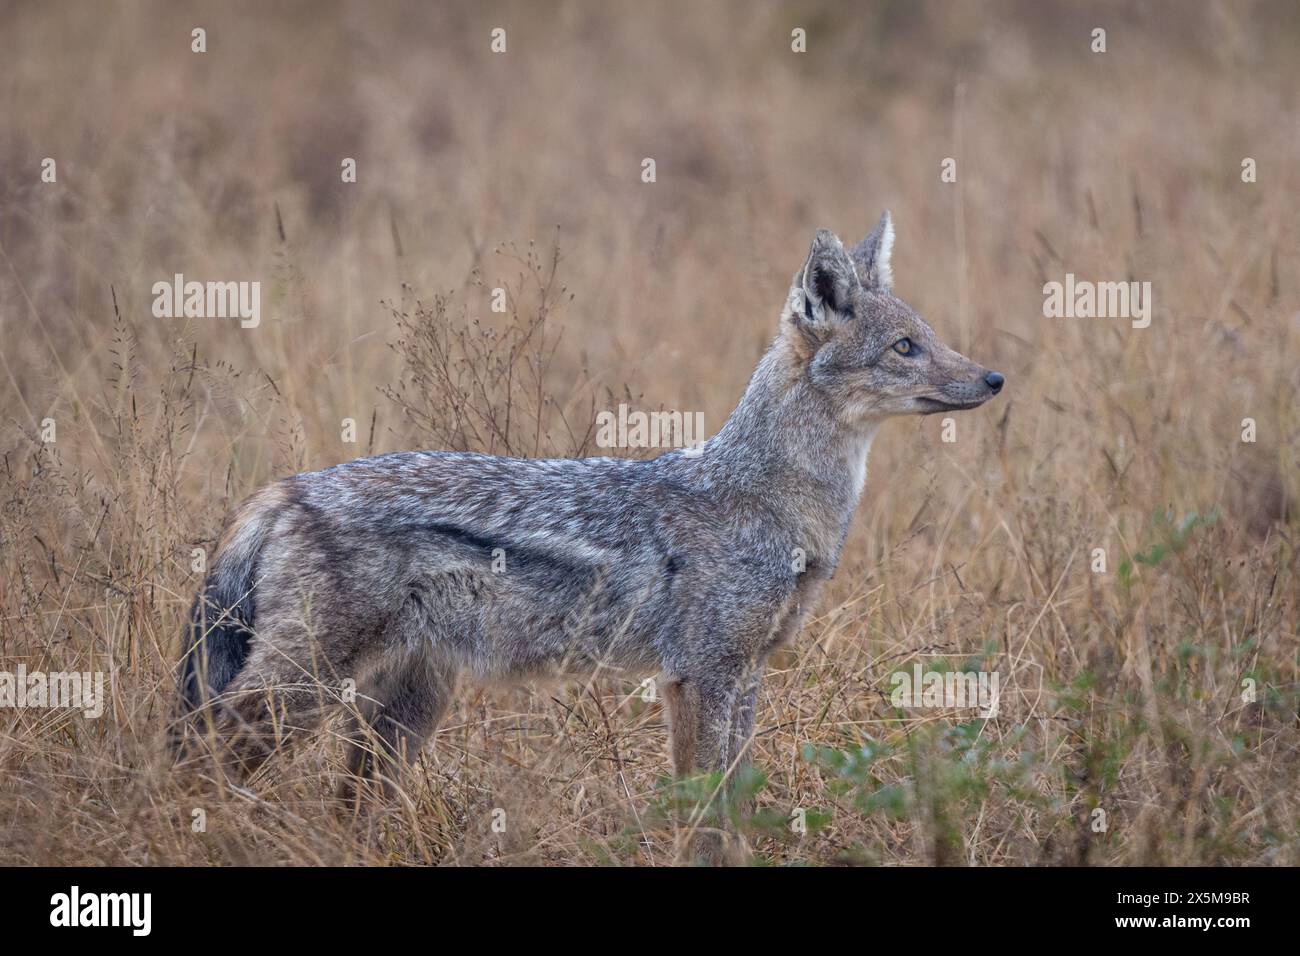 Uno sciacallo a strisce laterali, Canis adustus, in piedi in erba, profilo laterale. Foto Stock